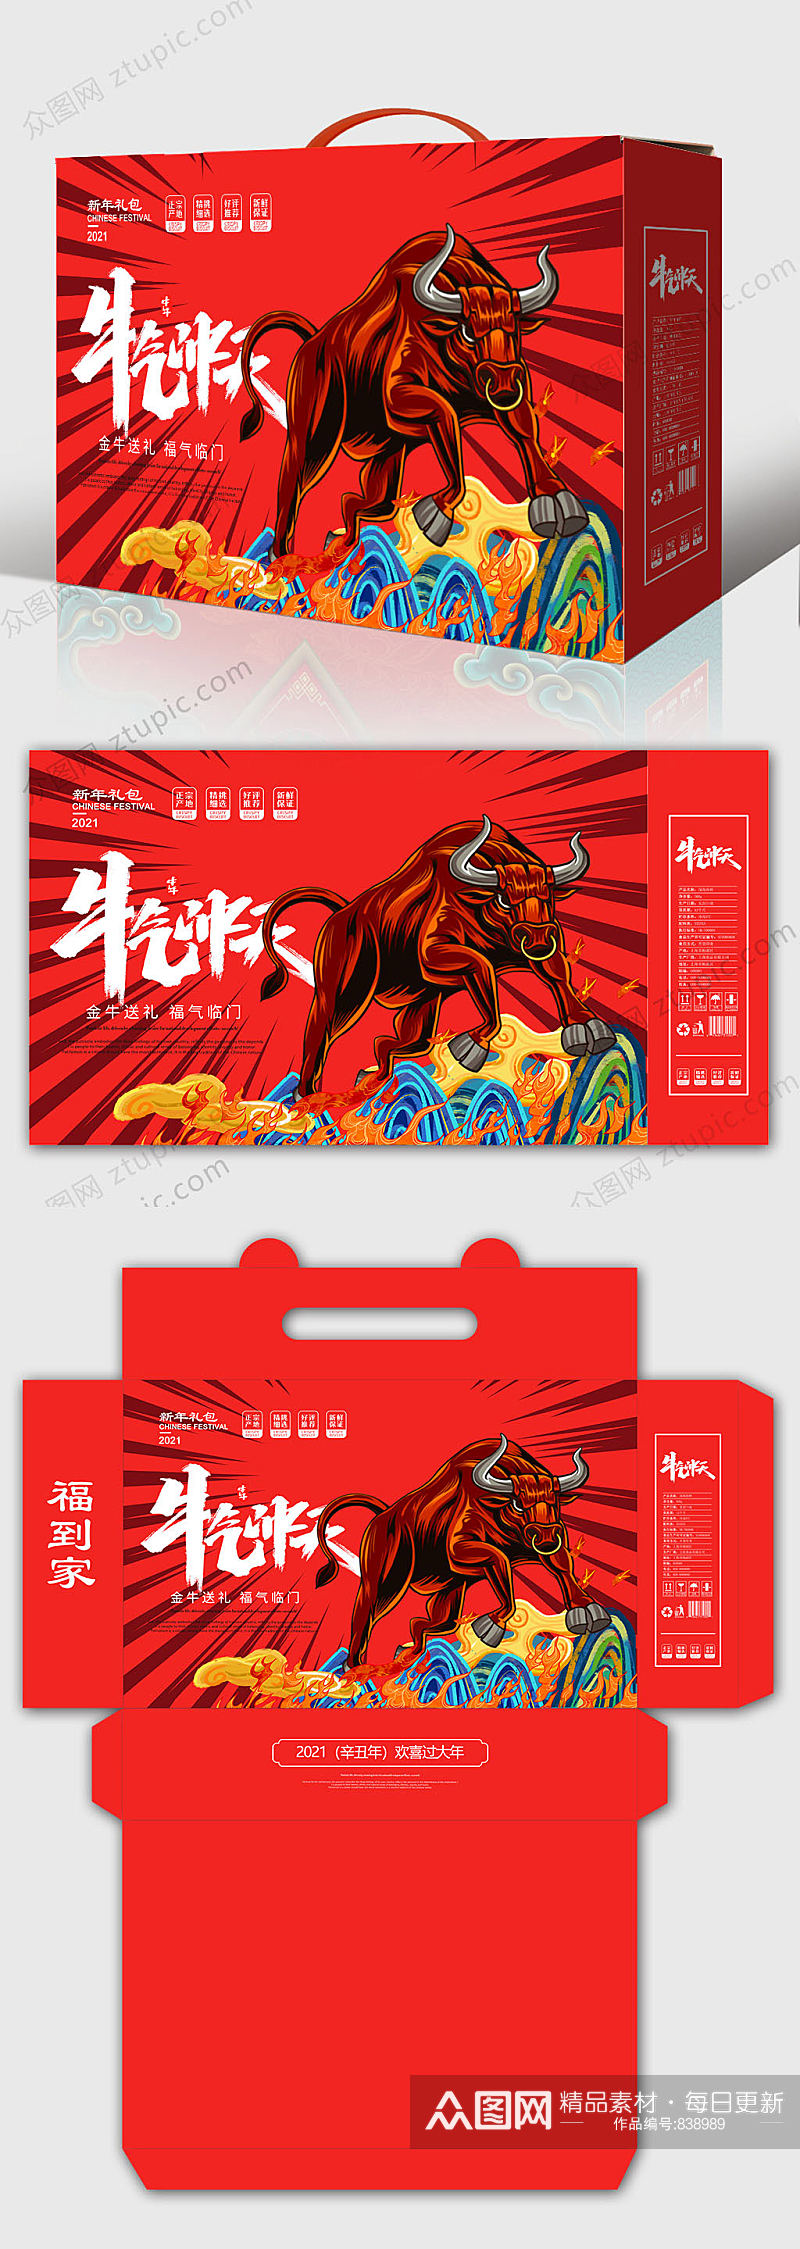 2021牛年春节 新年年货礼盒包装设计素材